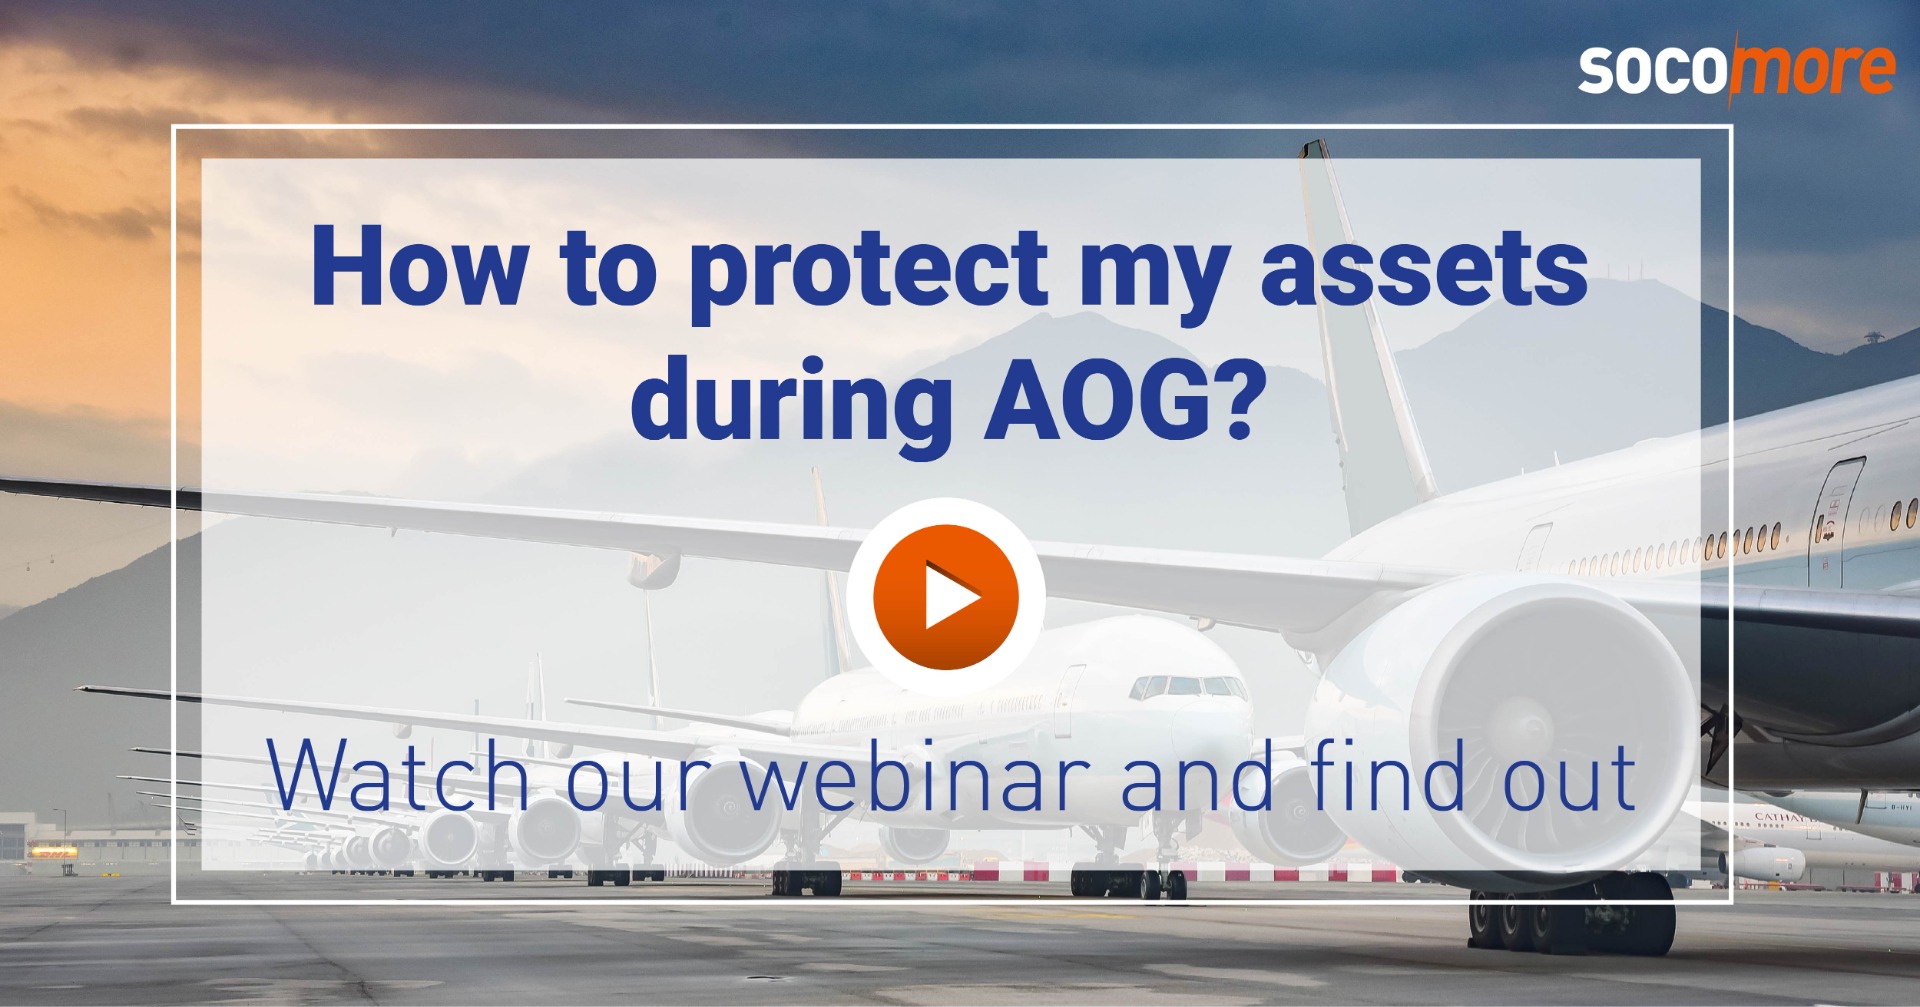 Protéger vos équipements pendant l'AOG et la préservation à long terme